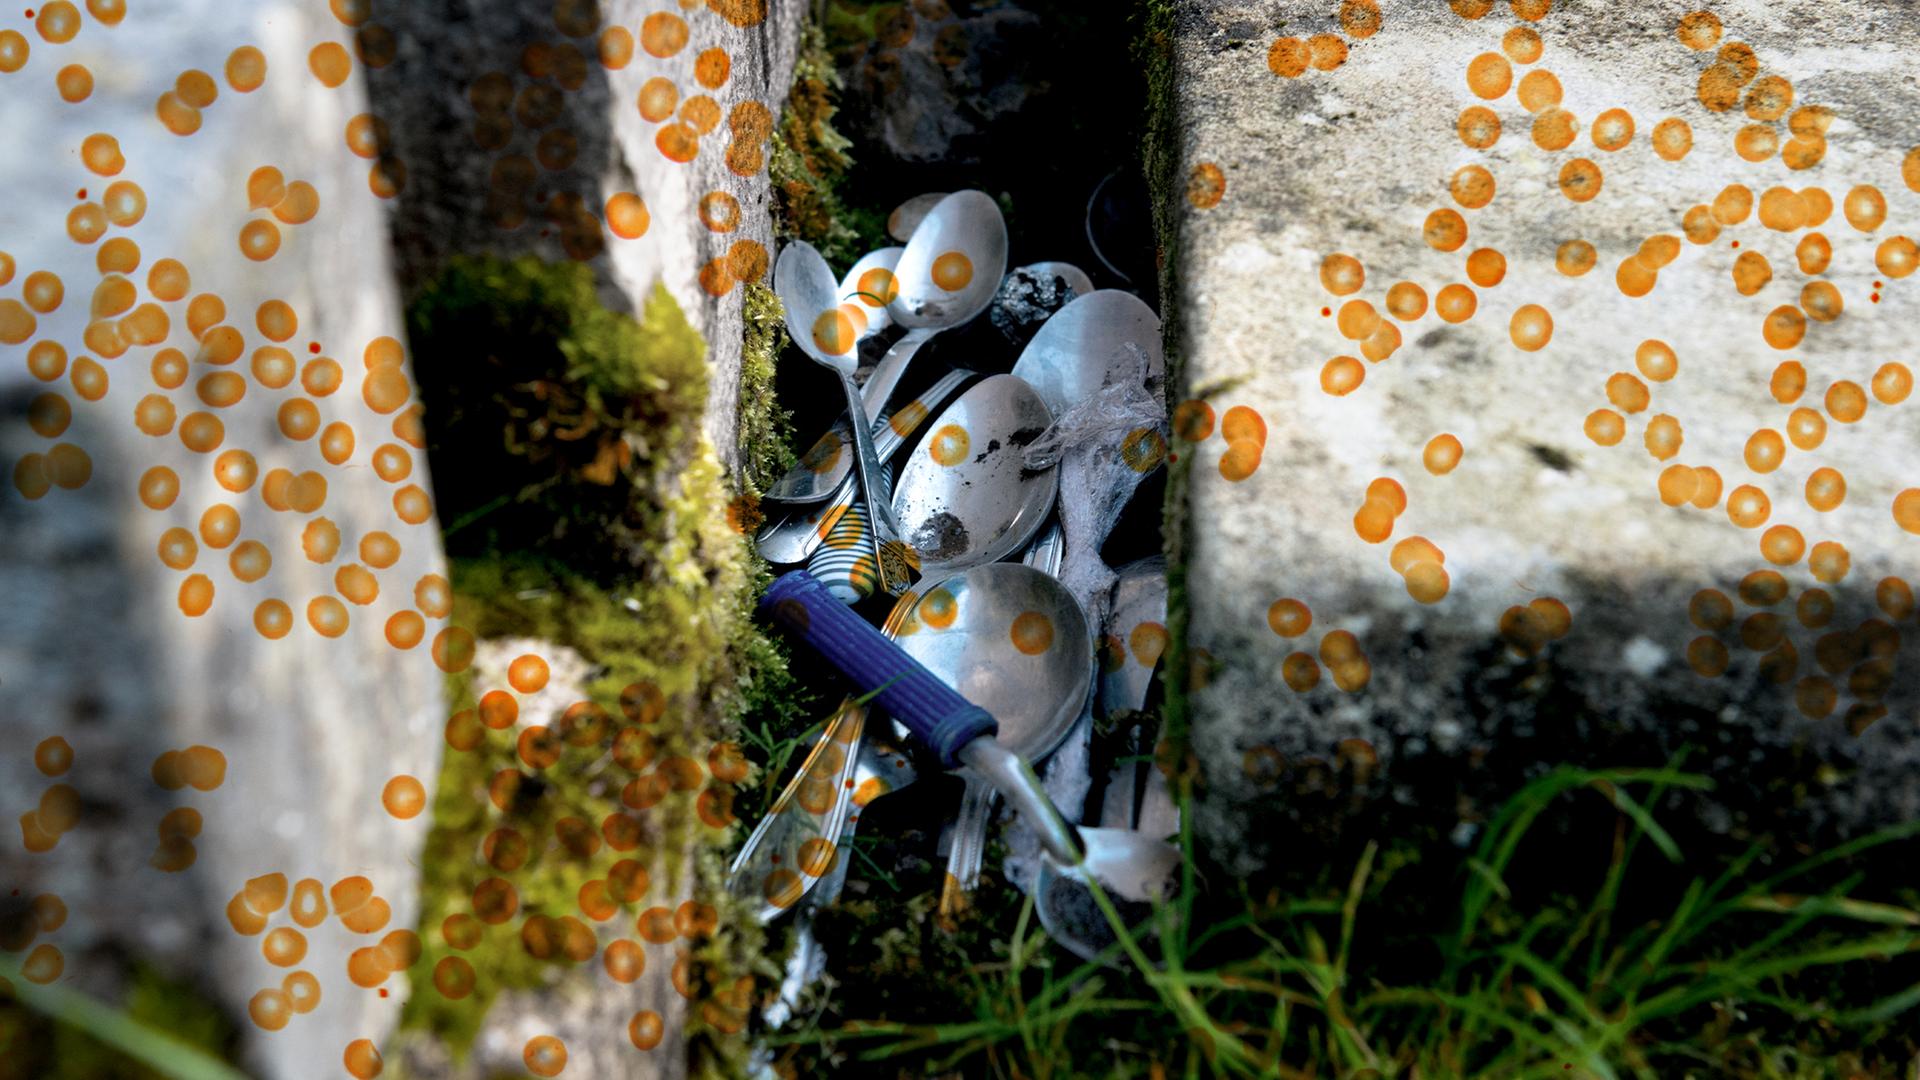 Zwischen zwei Grabsteinen liegen Löffel auf einer Wiese. Die Fotografie wird überlagert von einer Grafik aus orangen Punkten.